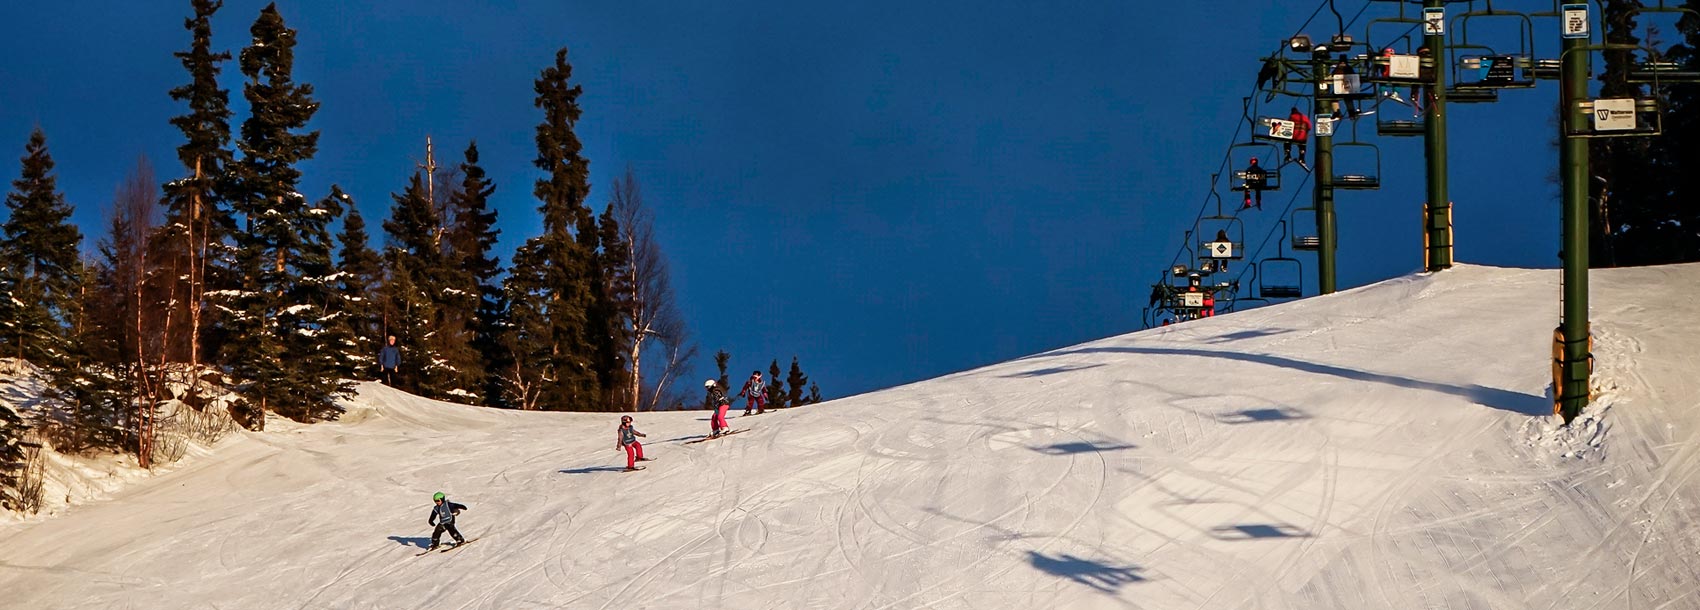 mountain and ski lift